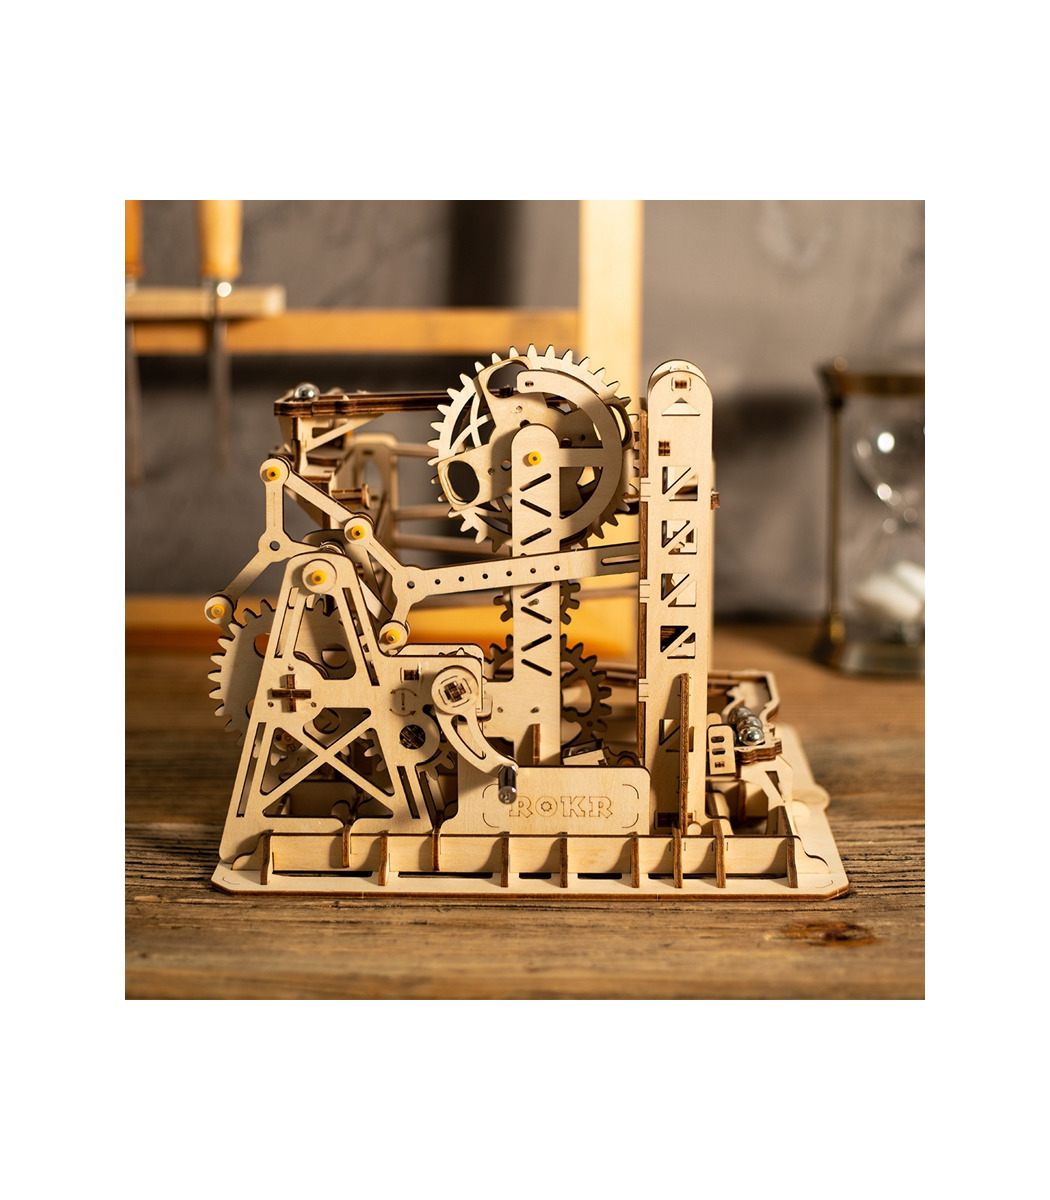 ROKR Marmor Achterbahn 3D Puzzle DIY Holz Laserschneiden Spielzeug für Kinder 